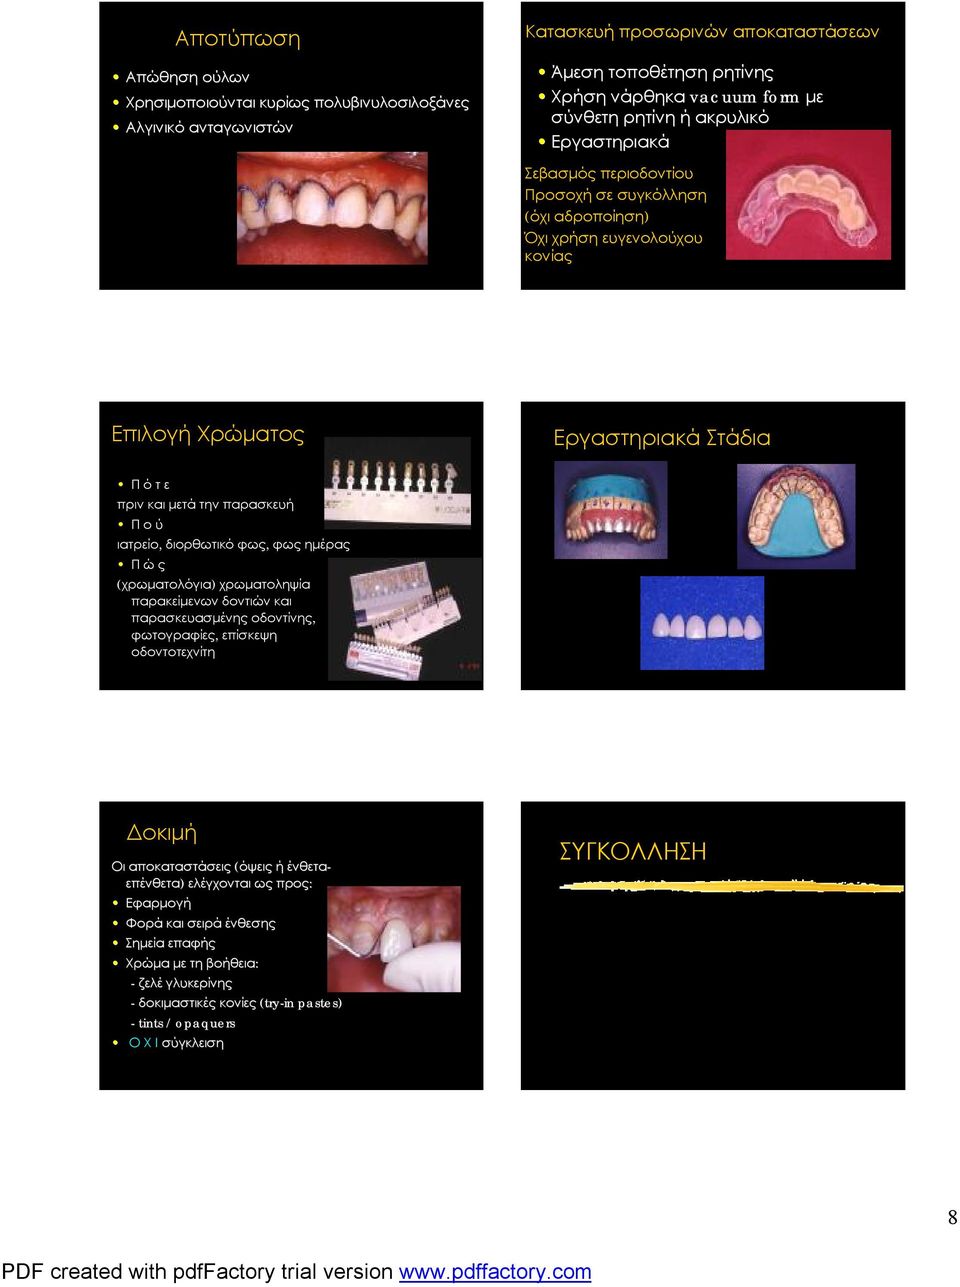 ιατρείο, διορθωτικό φως, φως ημέρας Π ώ ς (χρωματολόγια) χρωματοληψία παρακείμενων δοντιών και παρασκευασμένης οδοντίνης, φωτογραφίες, επίσκεψη οδοντοτεχνίτη Δοκιμή Οι αποκαταστάσεις (όψεις ή